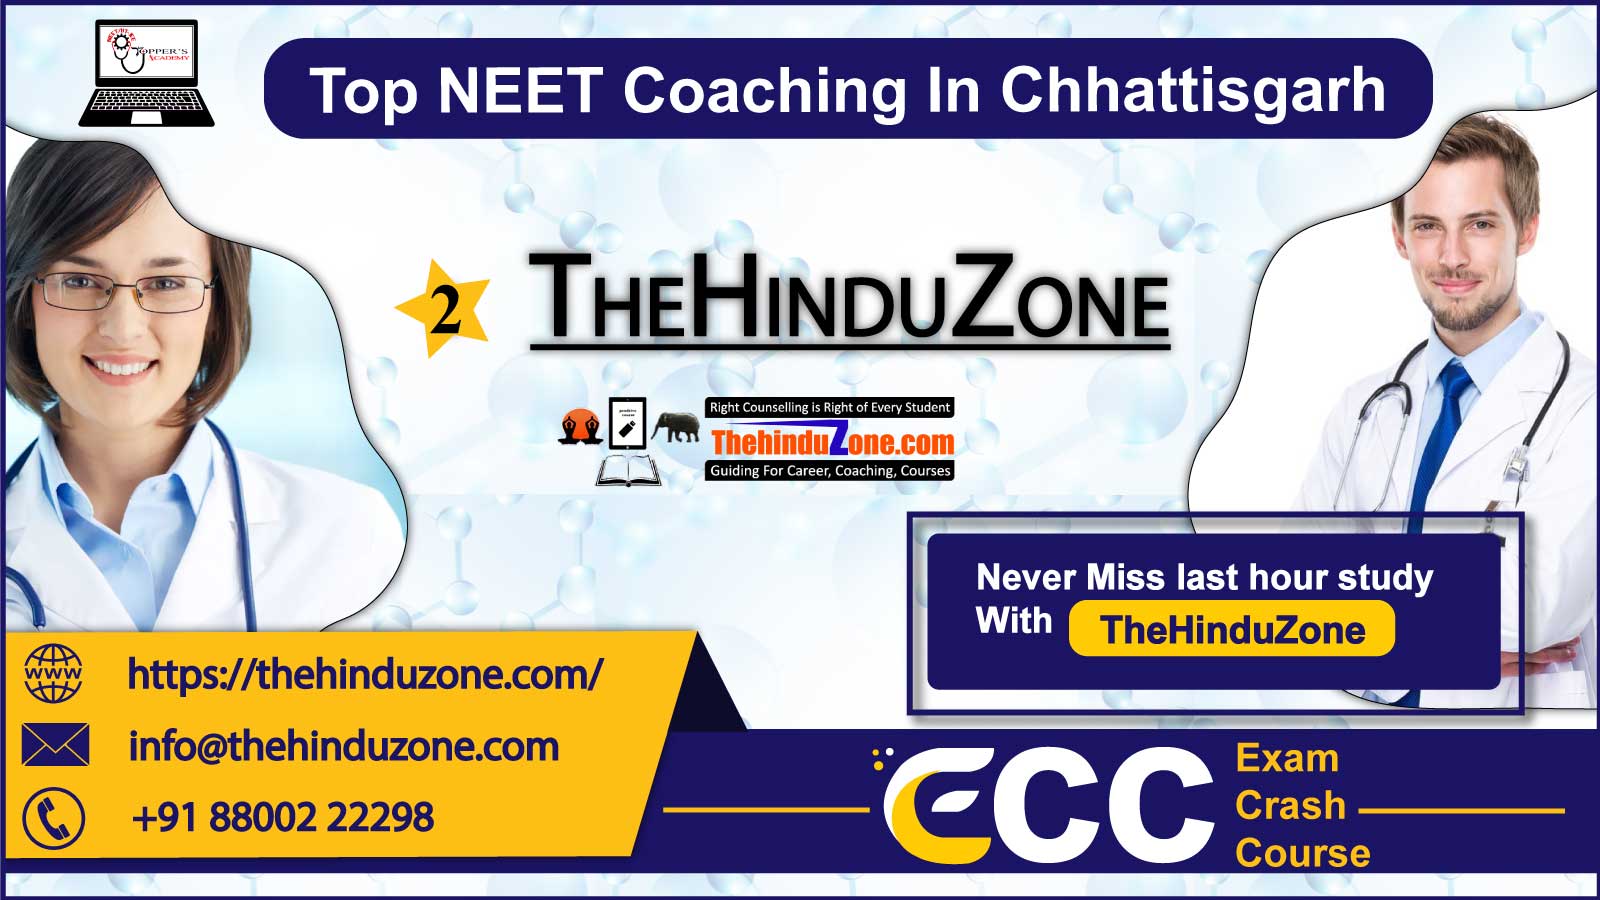 TheHinduZone NEET Coaching In Chhattisgarh